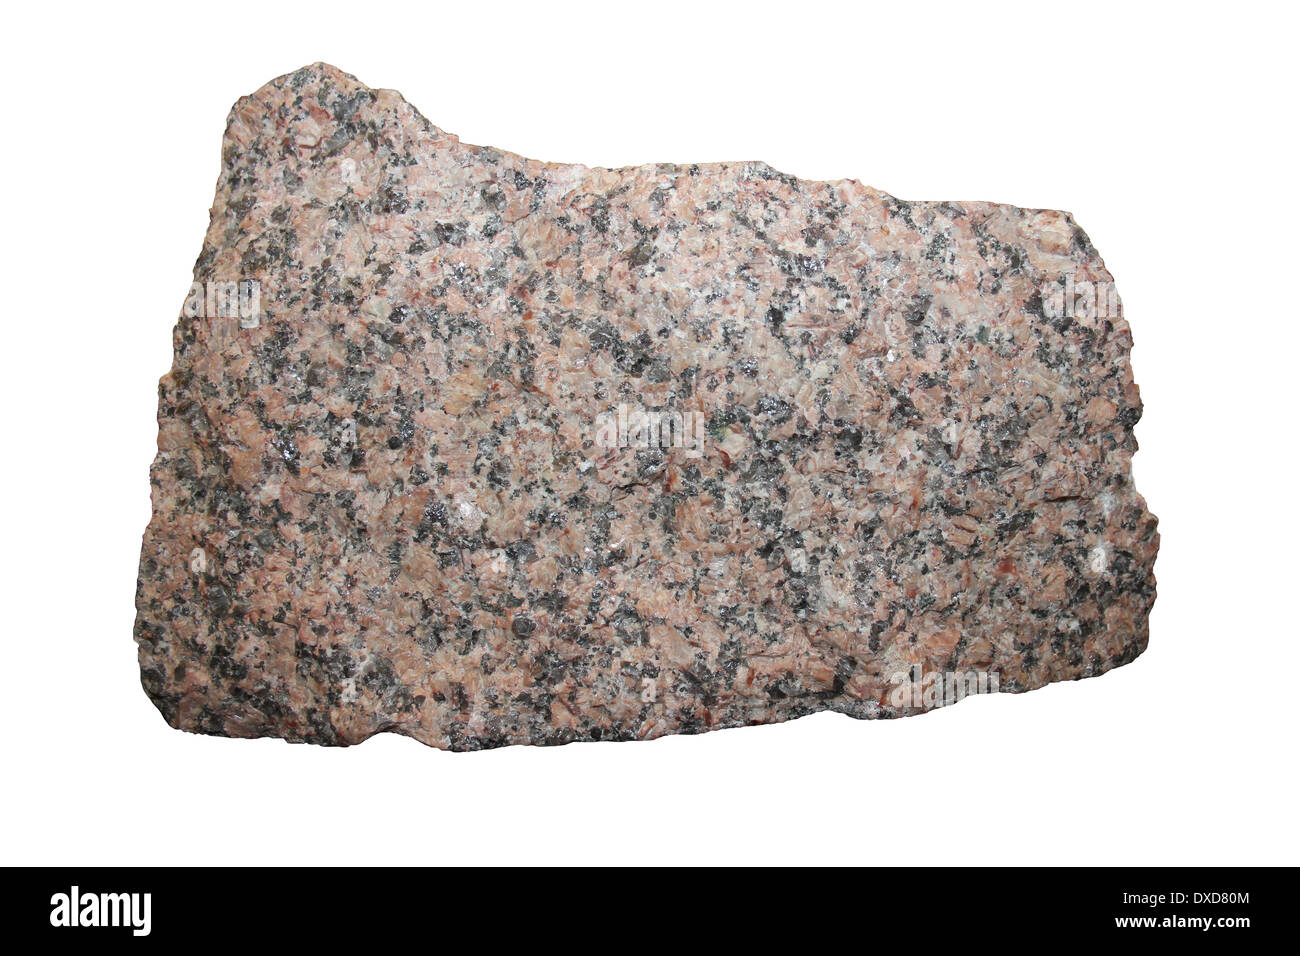 Shap Granit Muster - Cumbria, Großbritannien ein unverwechselbares grobkörnigen Granit mit großen rosa Orthoklas sind miteinander auch Feldspat Quarz, Biotit und plagioklas Fel Stockfoto